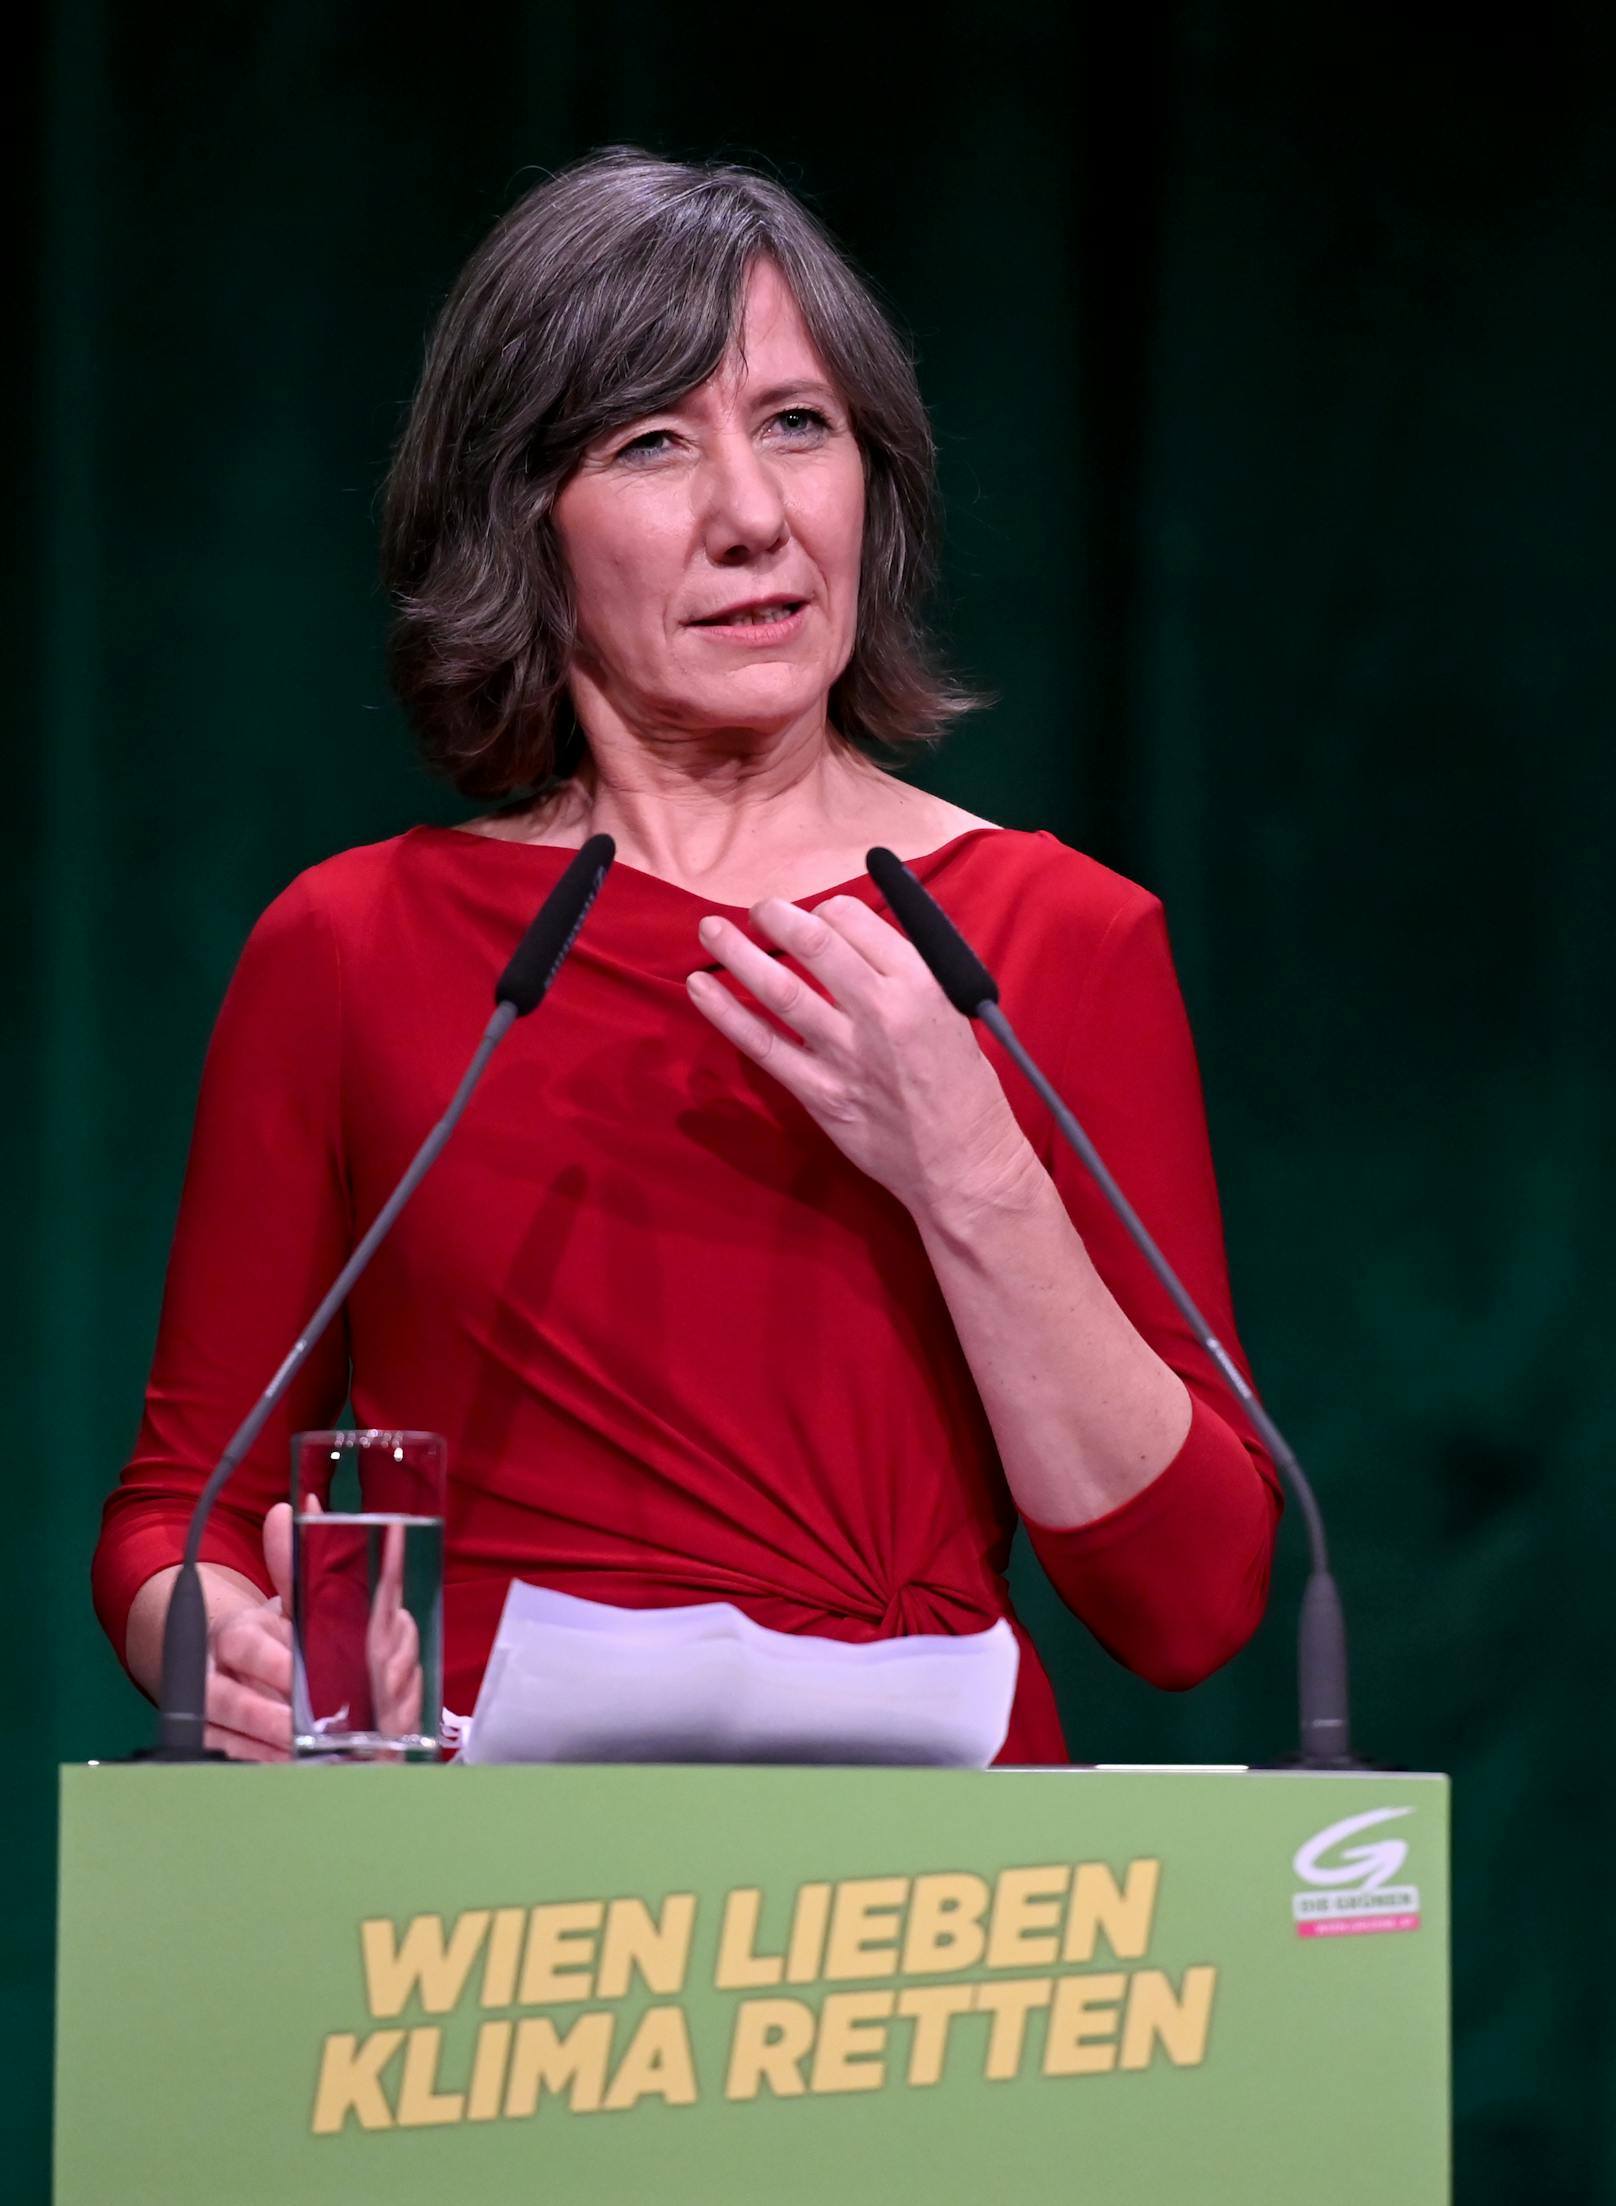 Die ehemalige Vizebürgermeisterin Birgit Hebein während einer Rede im Rahmen der 82. Landesversammlung der Wiener Grünen am Samstag, 15. Februar 2020 in Wien.